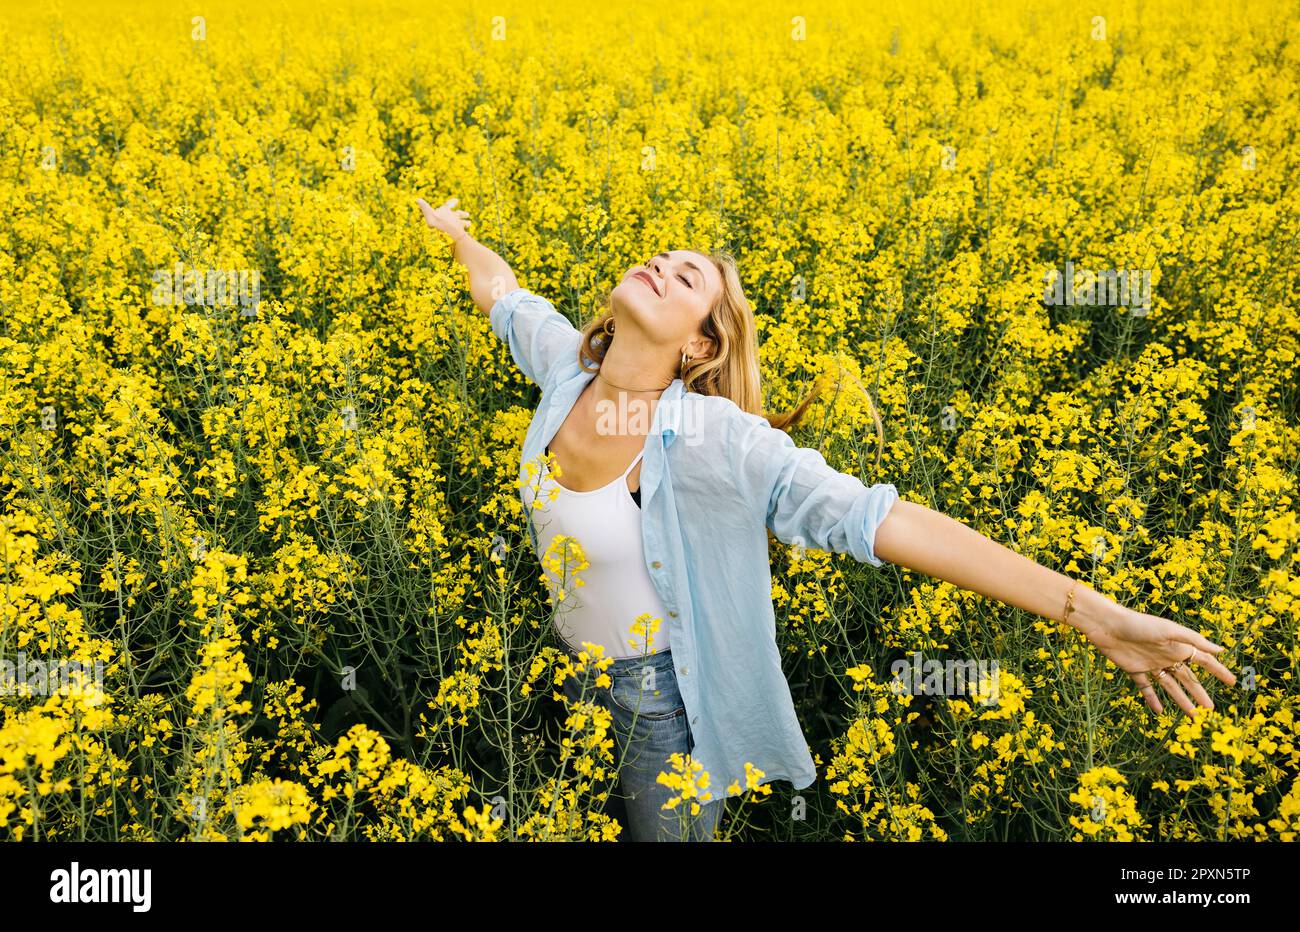 Wunderschöne, junge blonde, fröhliche Frau, mit ausgestreckten Armen, inmitten eines Feldes blühender gelber Rapsblumen Stockfoto